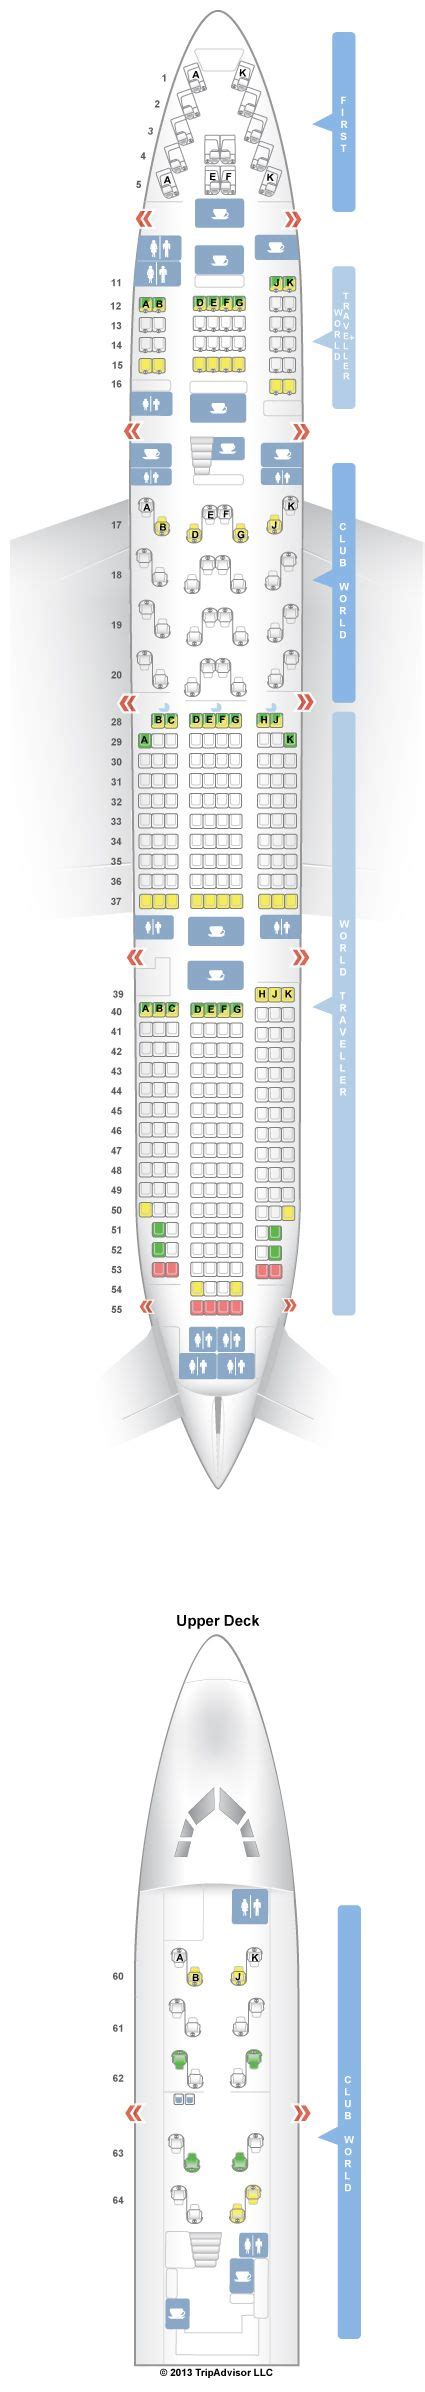 Seatguru Seat Map British Airways Boeing 747 400 744 V1 Boeing 747